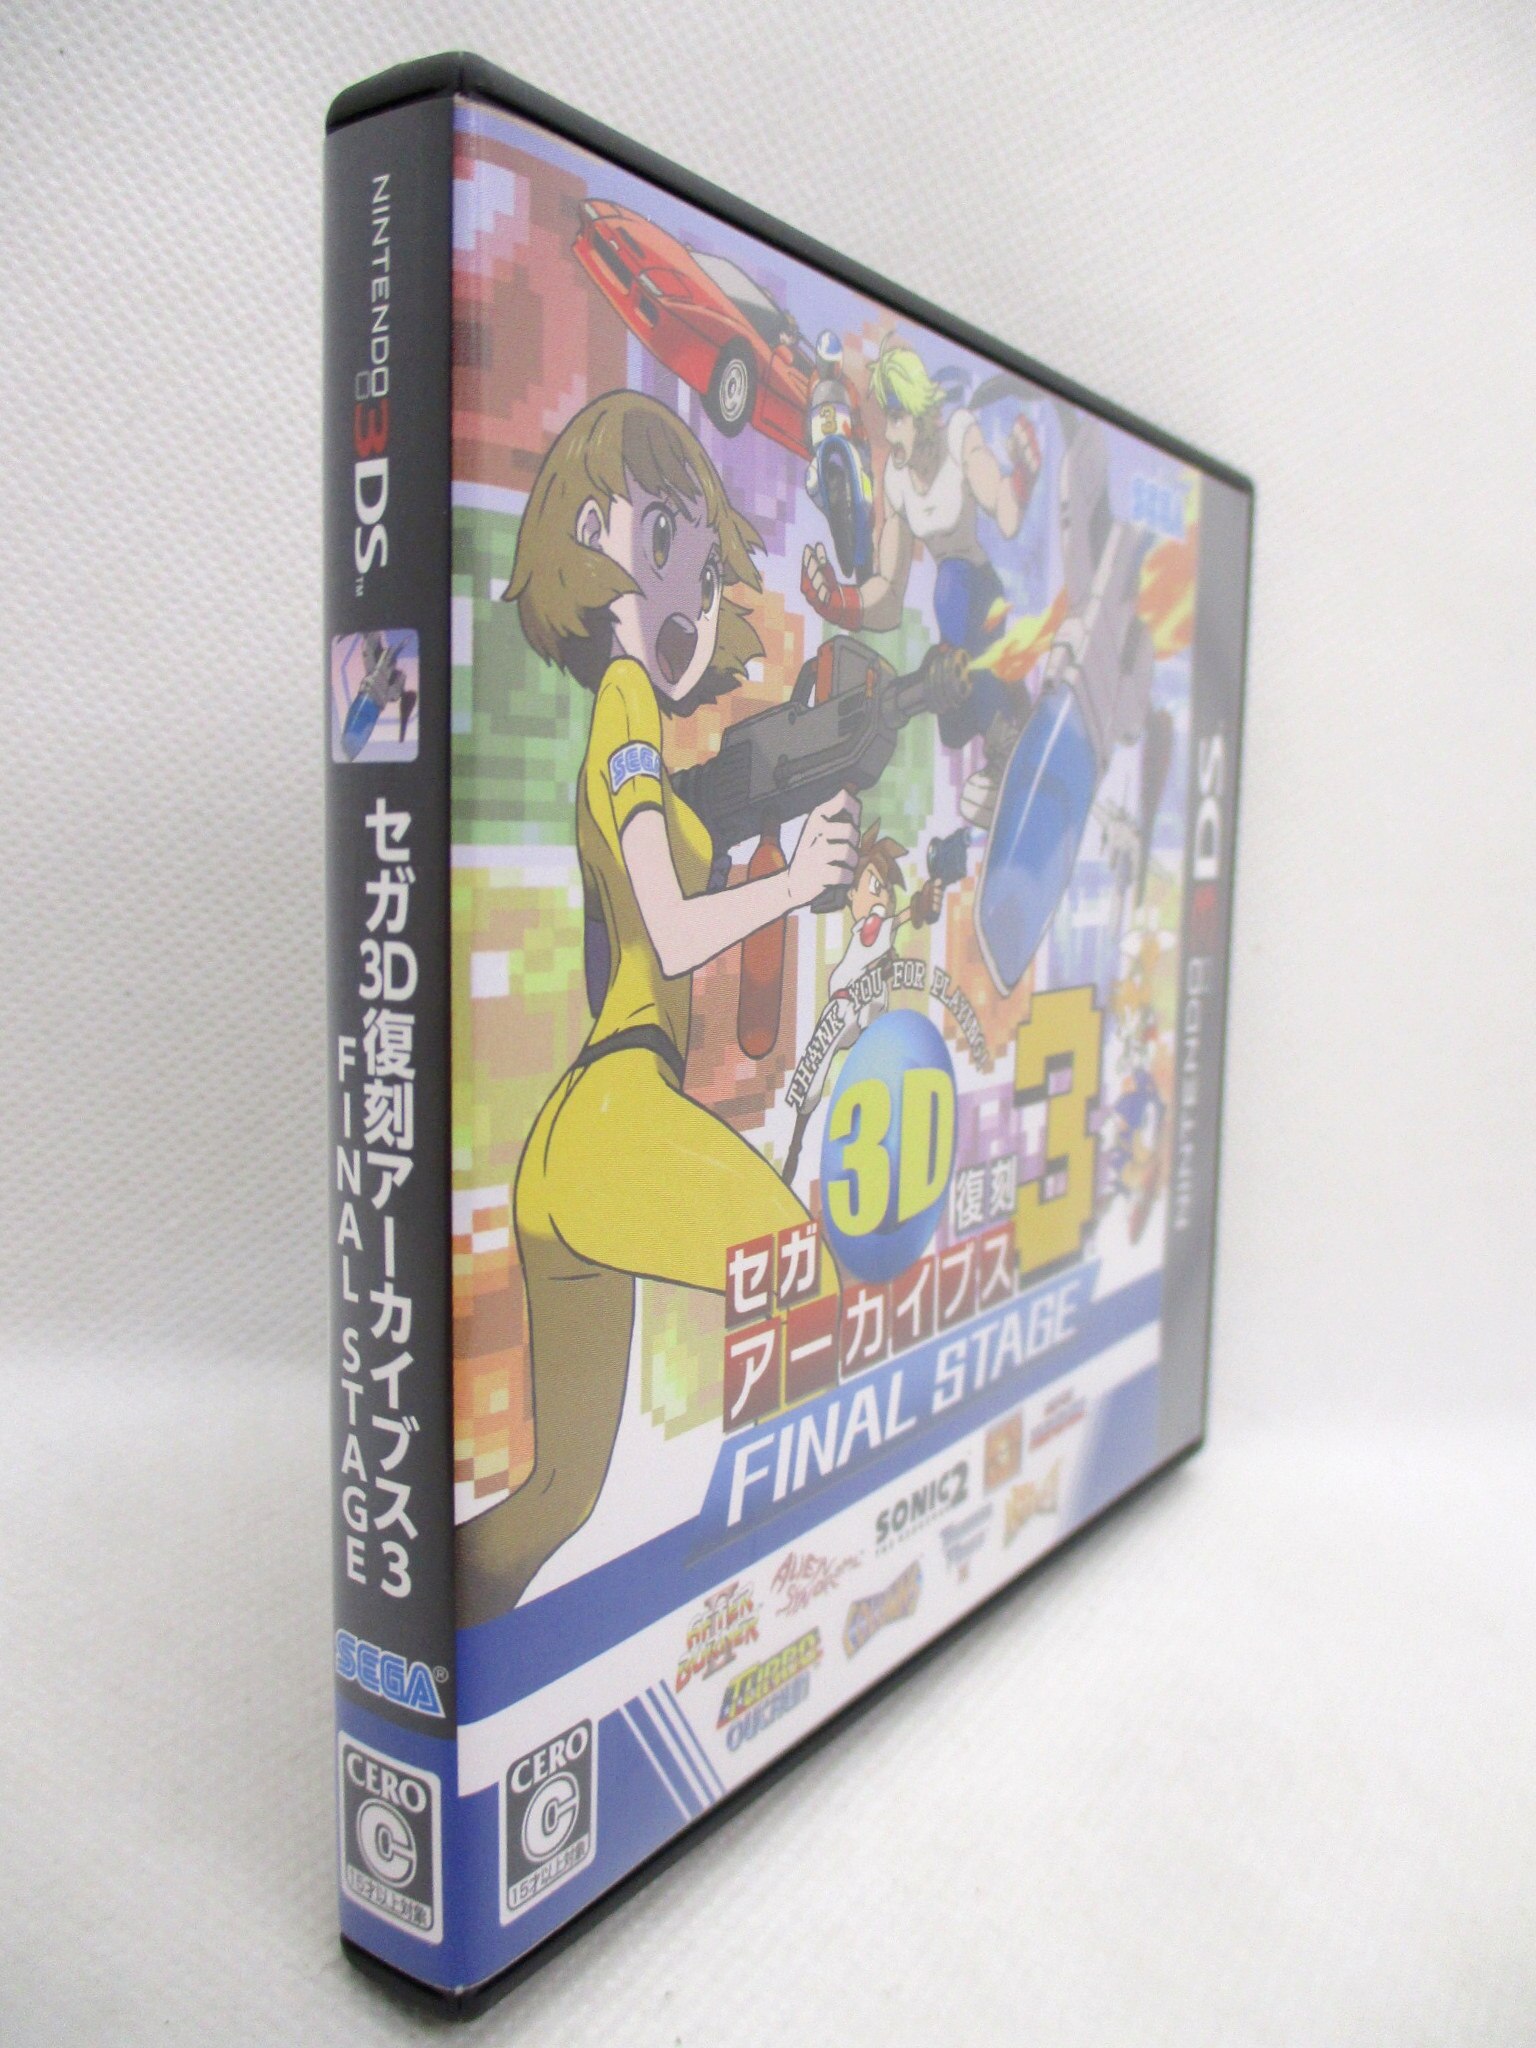 セガ3D復刻アーカイブス3 FINAL STAGE - 3DS - テレビゲーム